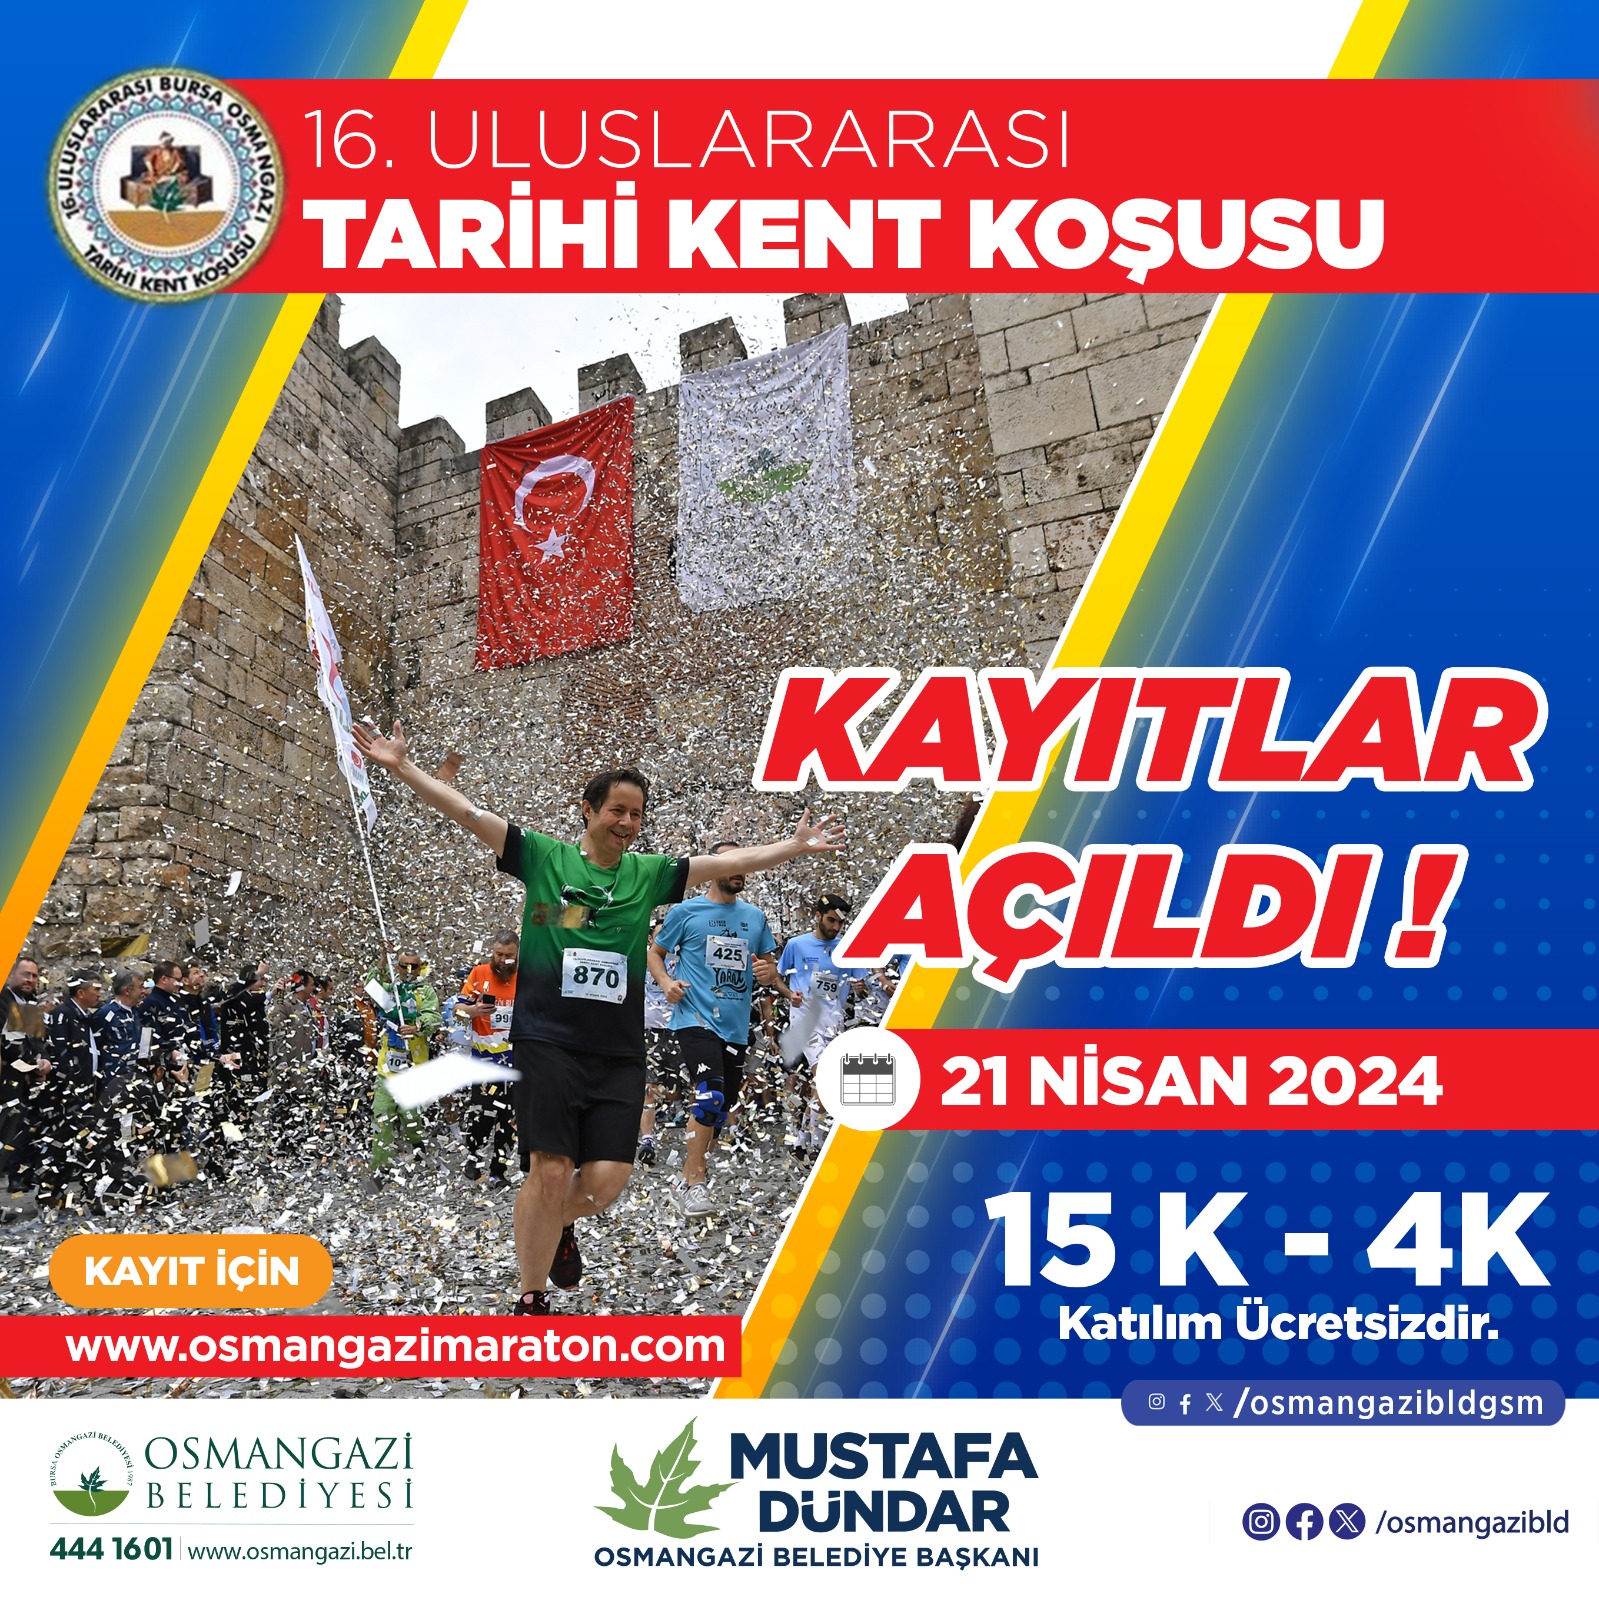 Bursa Osmangazi 16. Uluslararası tarihi Kent koşusu kayıtları açıldı